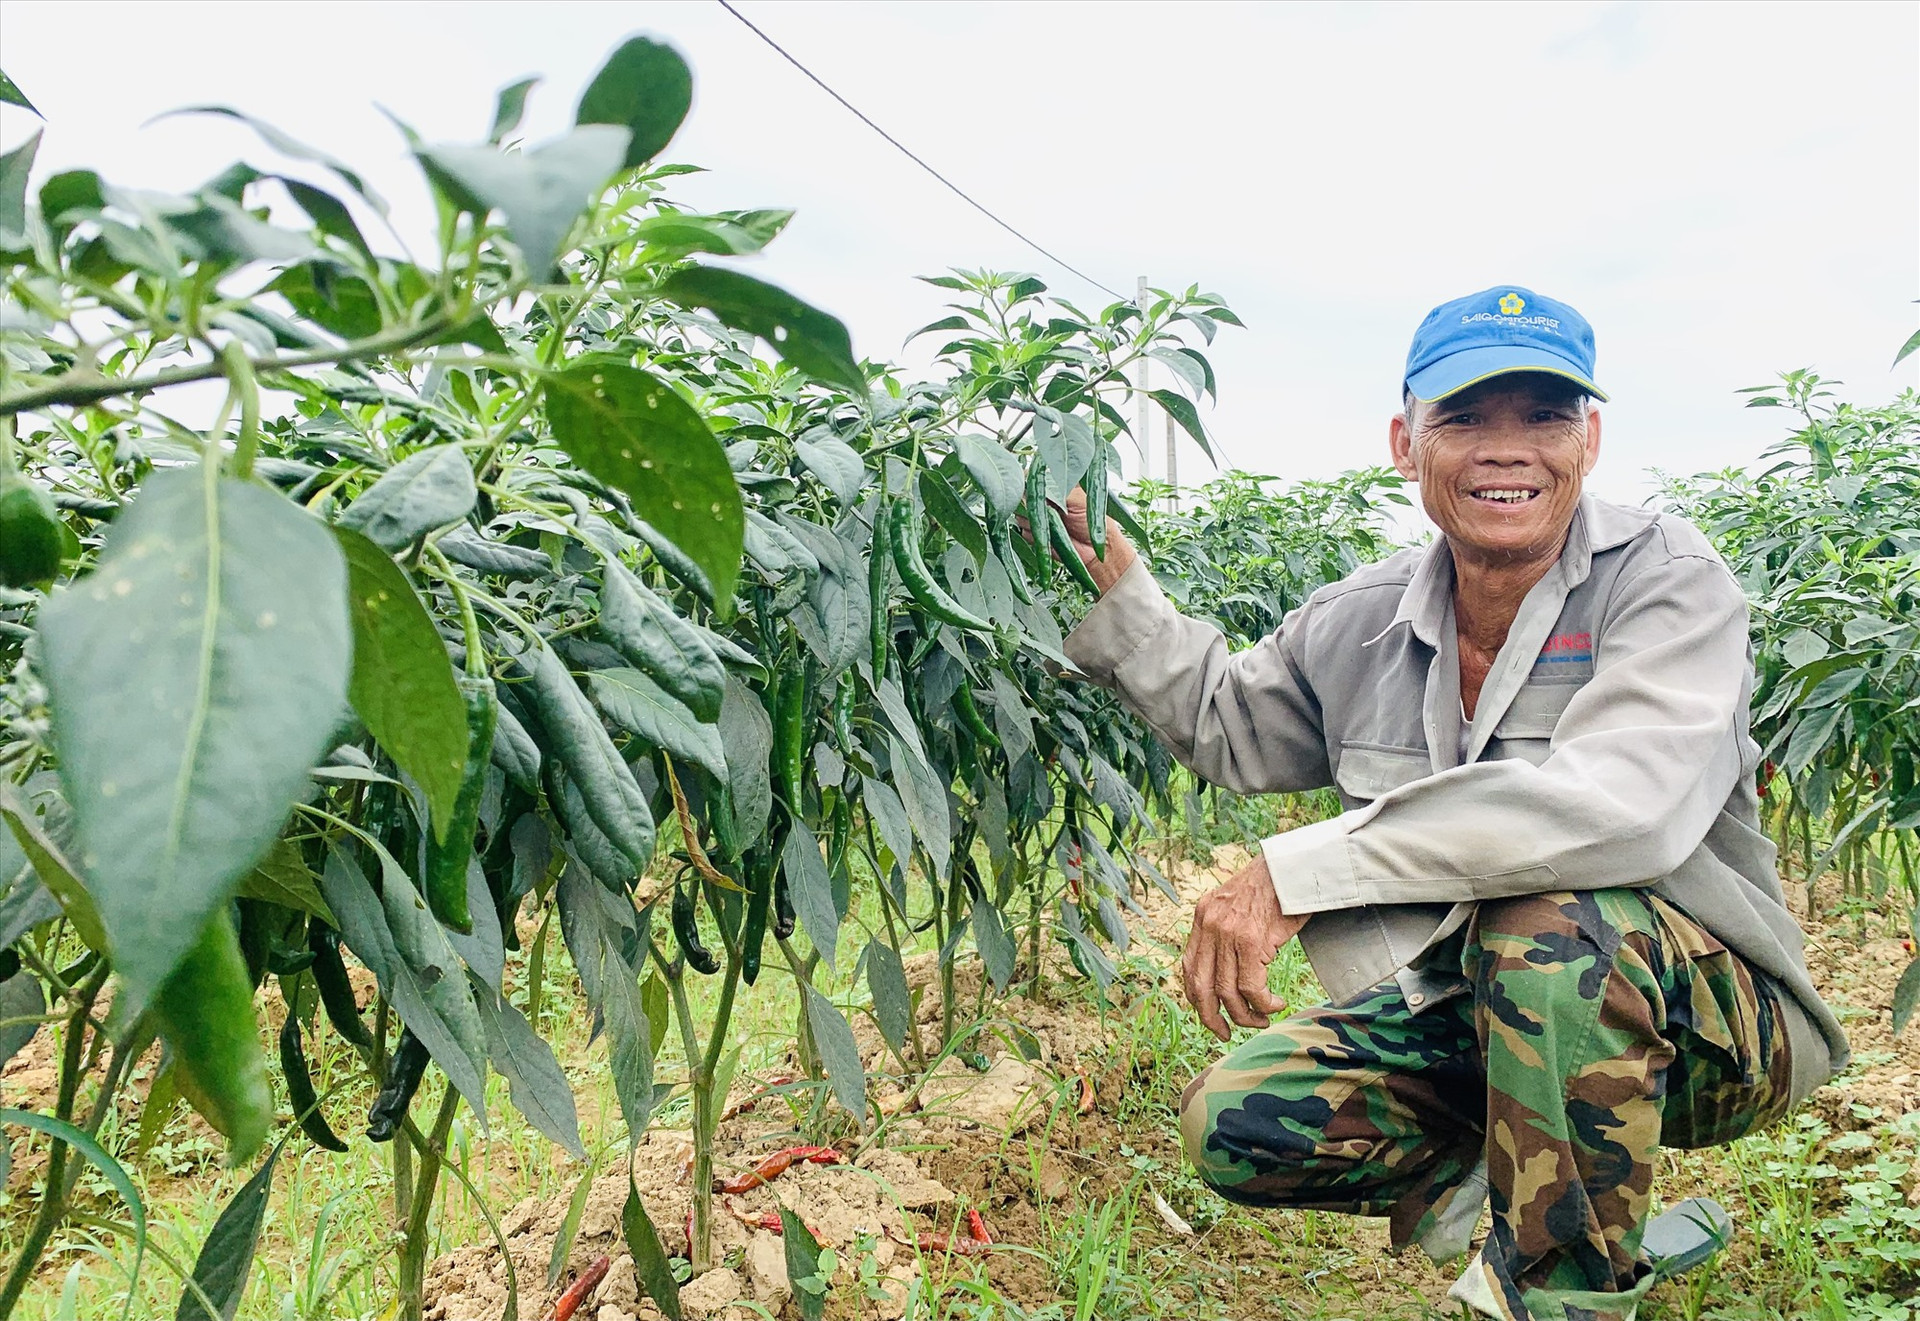 Mô hình liên kết sản xuất ớt theo chuỗi giá trị ở thôn Lệ Bắc (Duy Châu, Duy Xuyên) mang lại hiệu quả kinh tế cao cho nhà nông. Ảnh: T.L